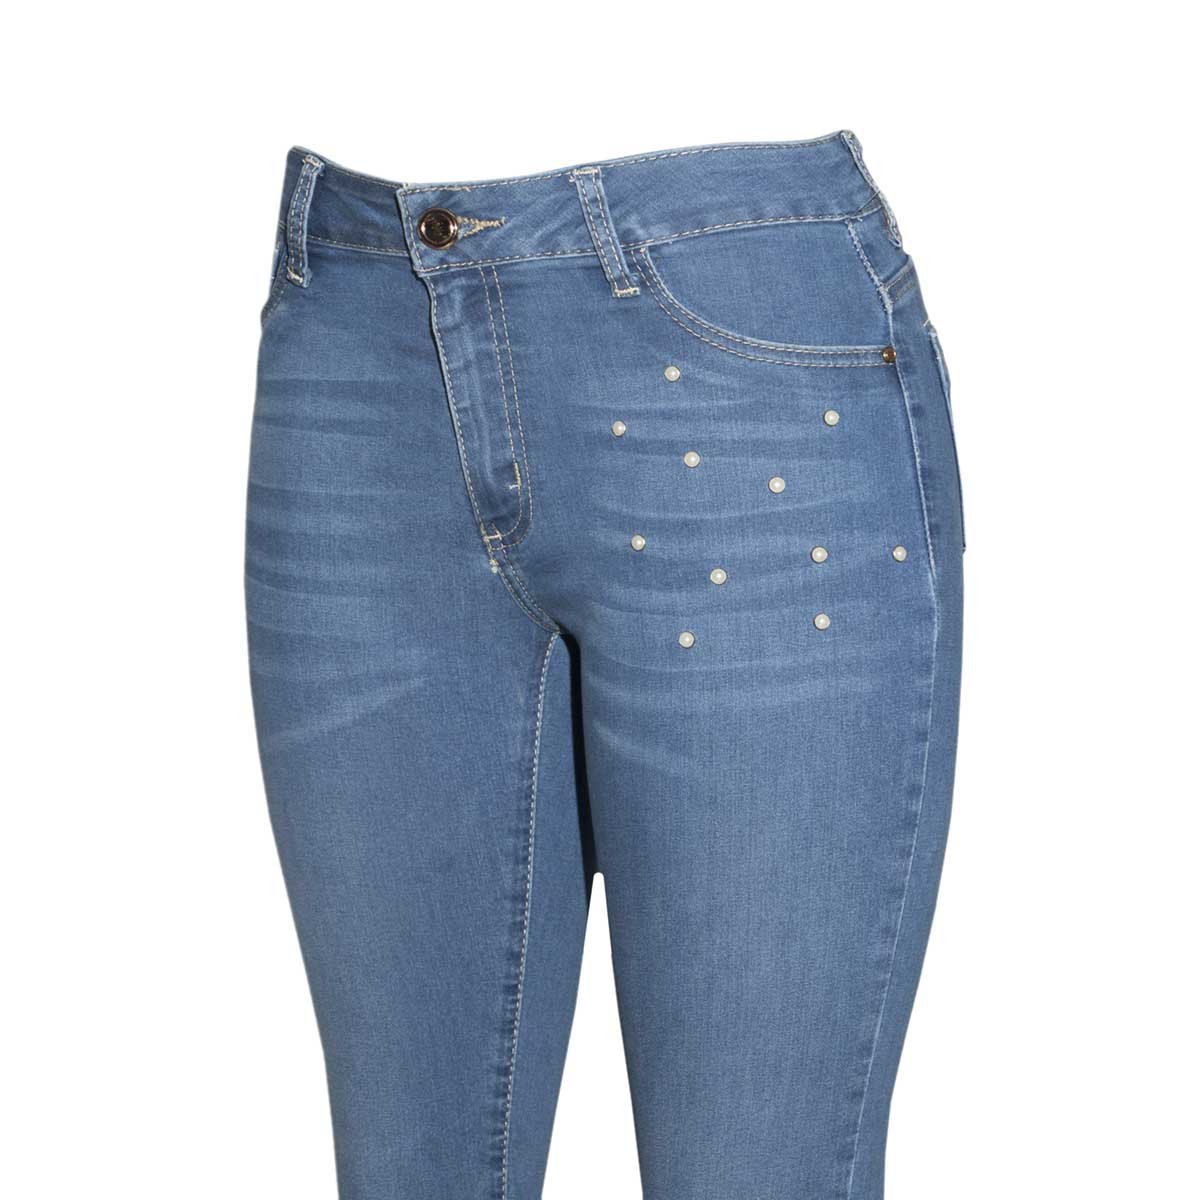 Jeans Skinny con Perlas Limoncello